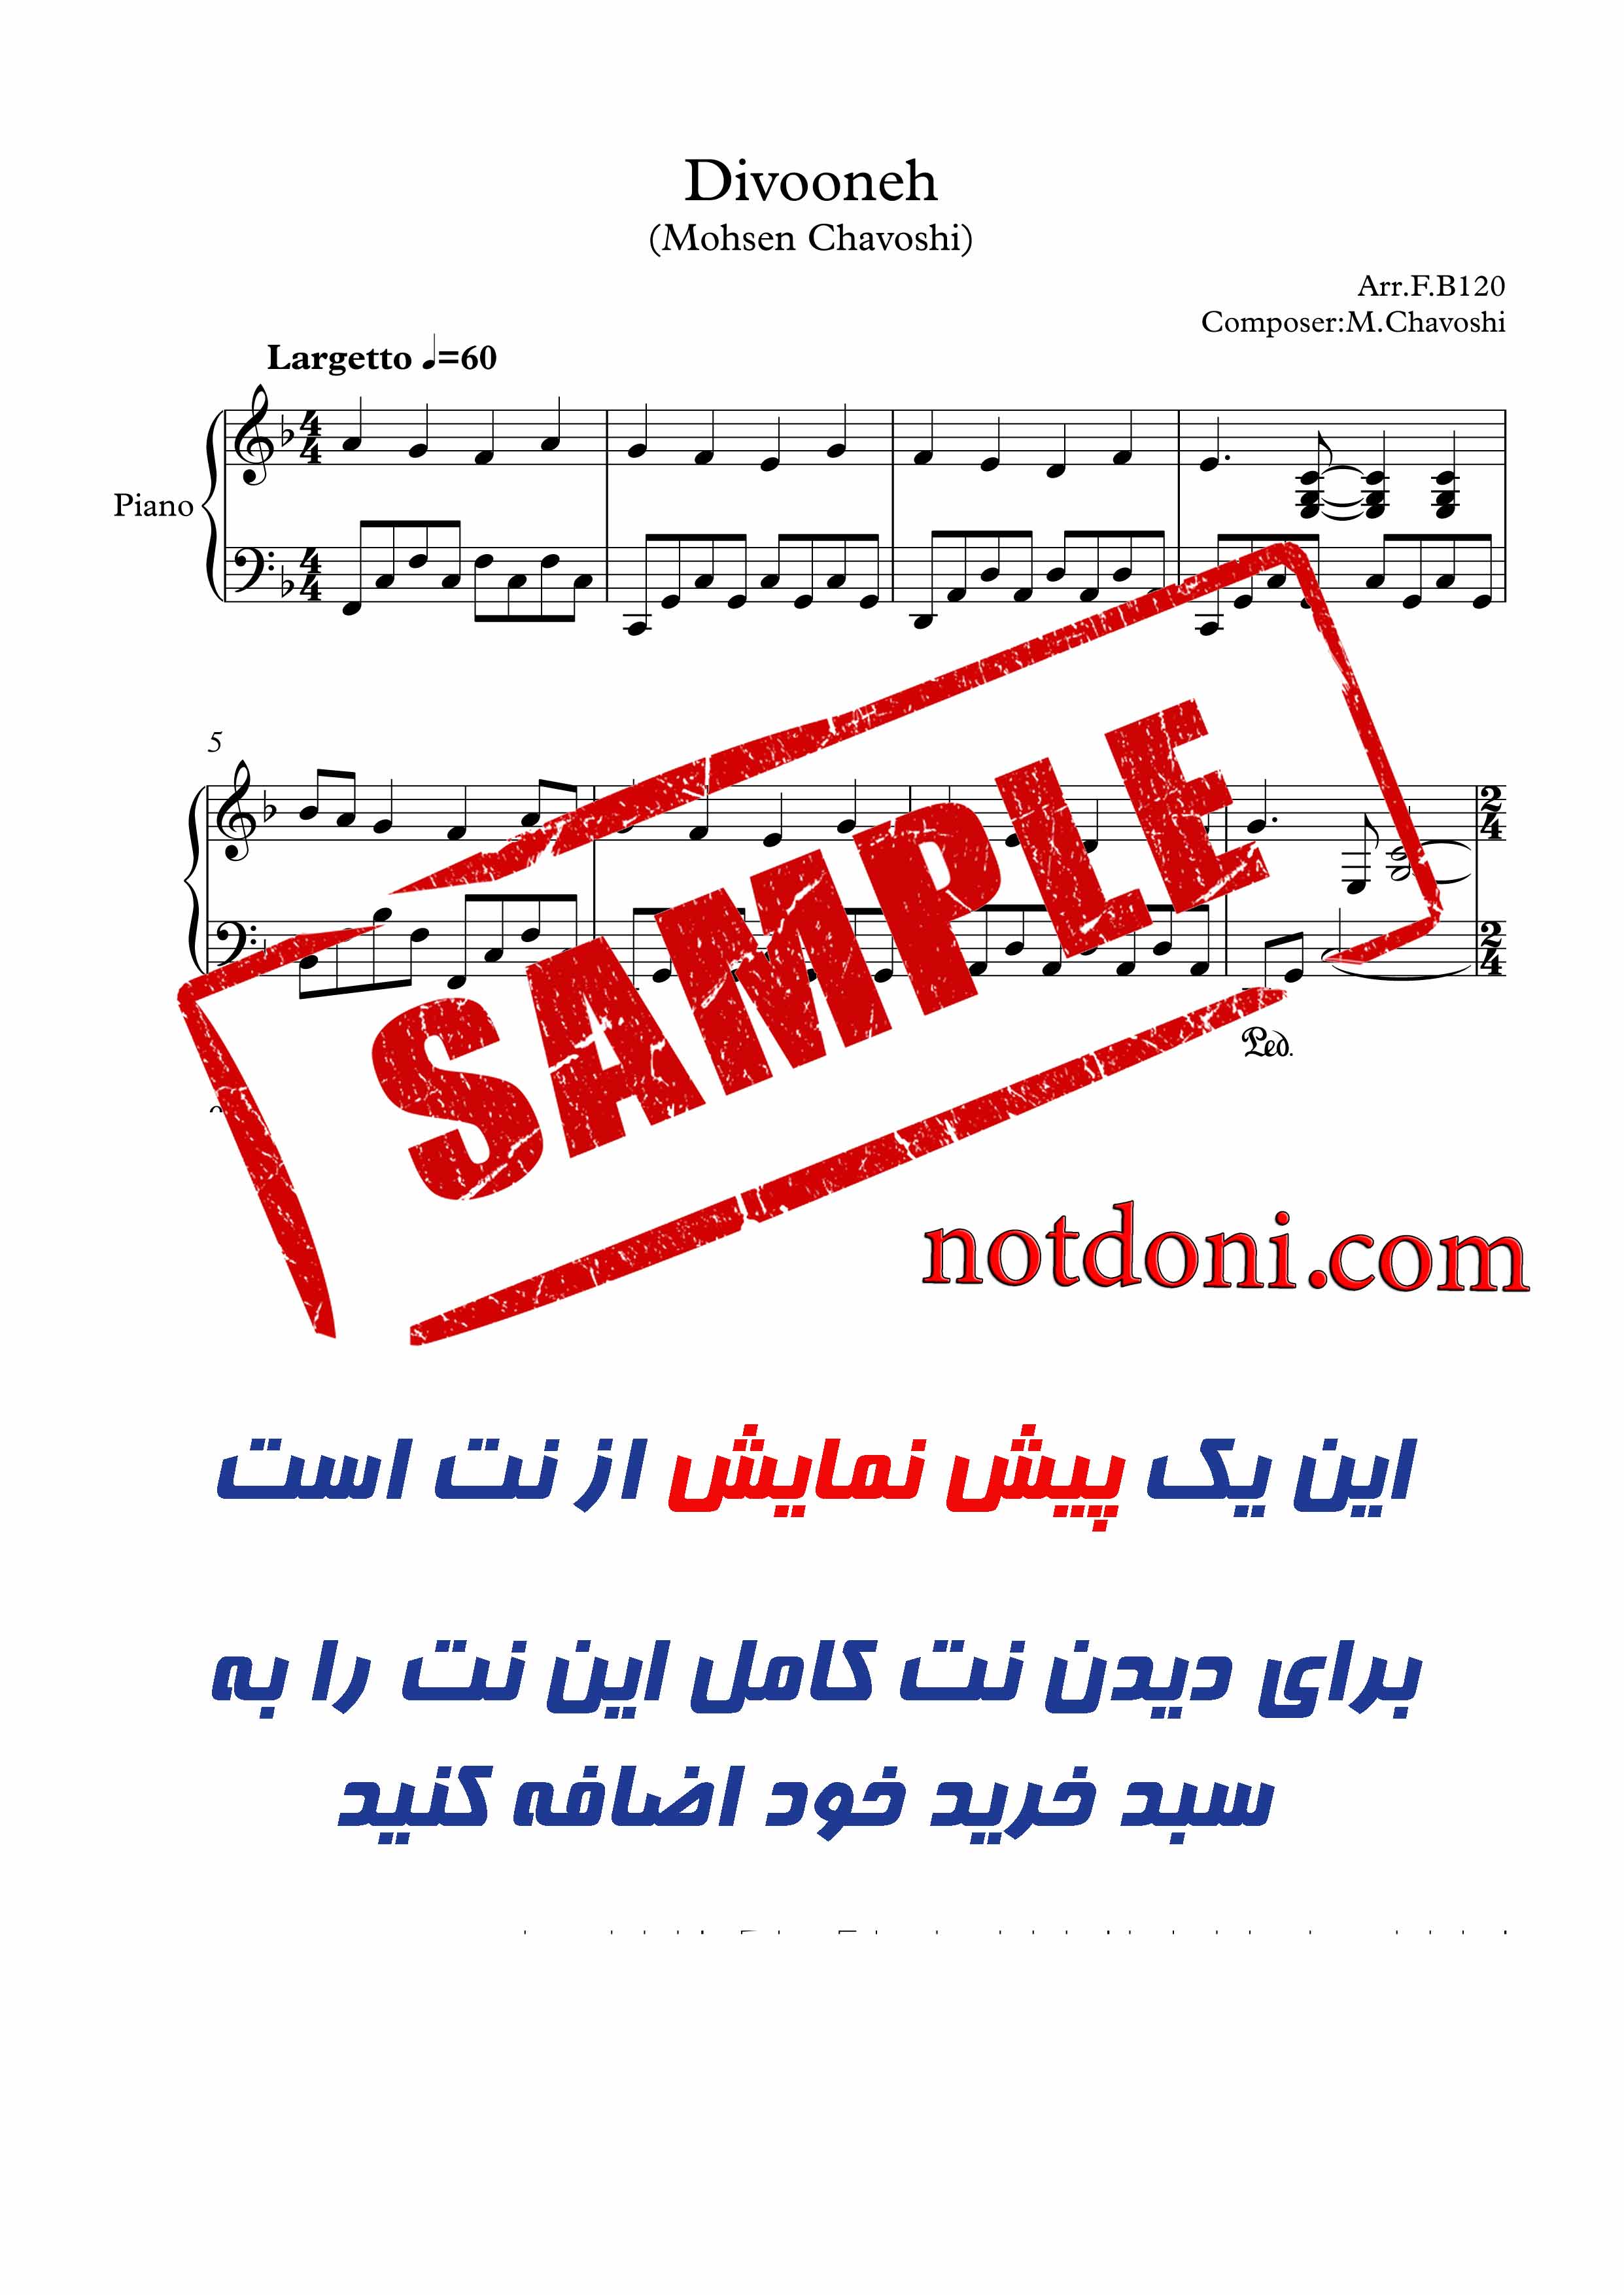 نت آهنگ دیوونه محسن چاوشی برای پیانو